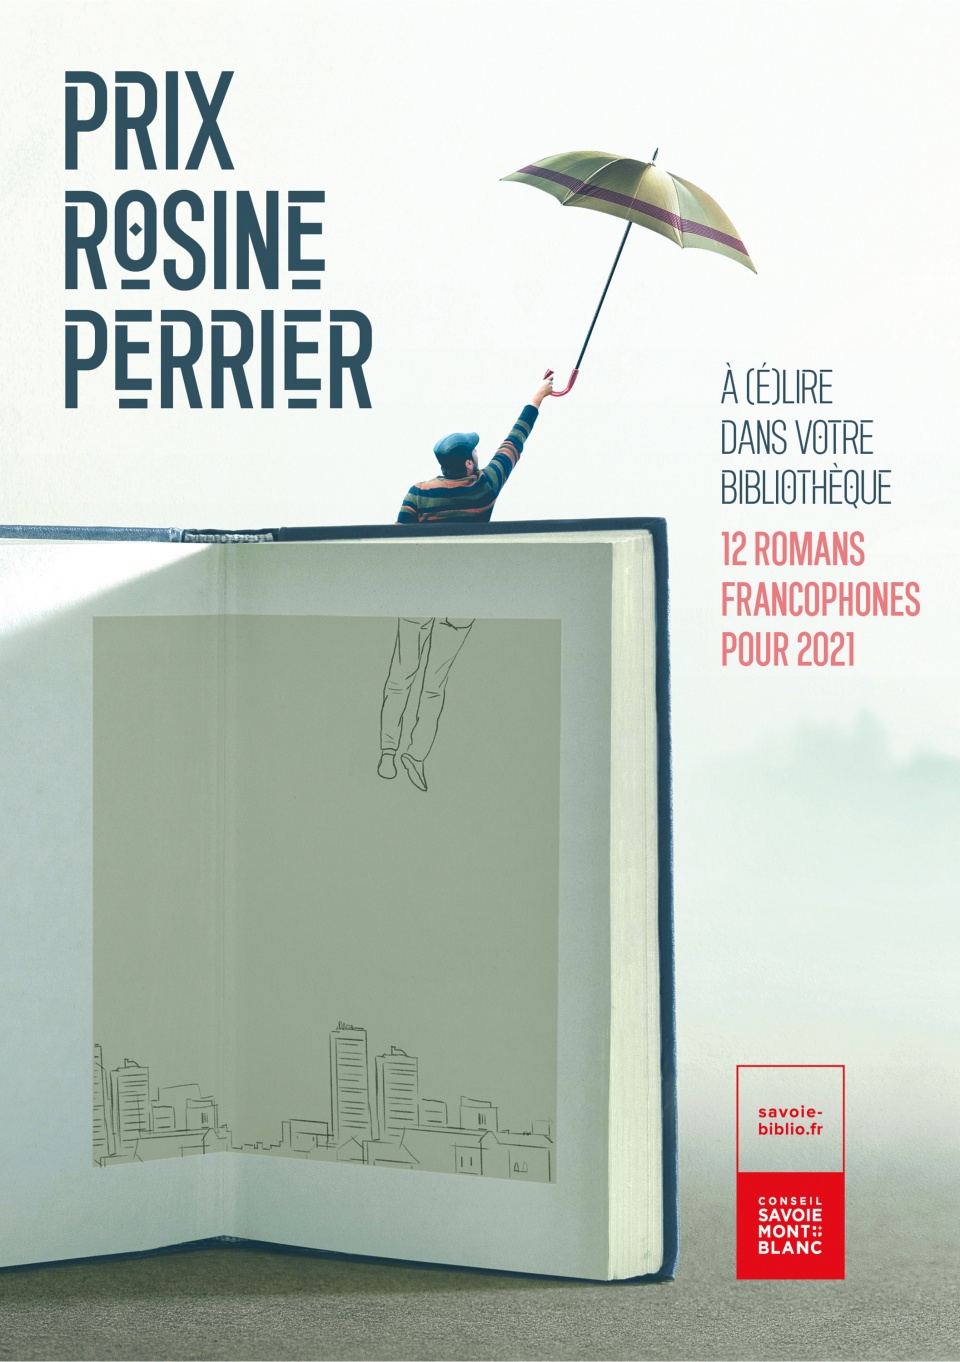 Communiquer sur le Prix littéraire Rosine Perrier